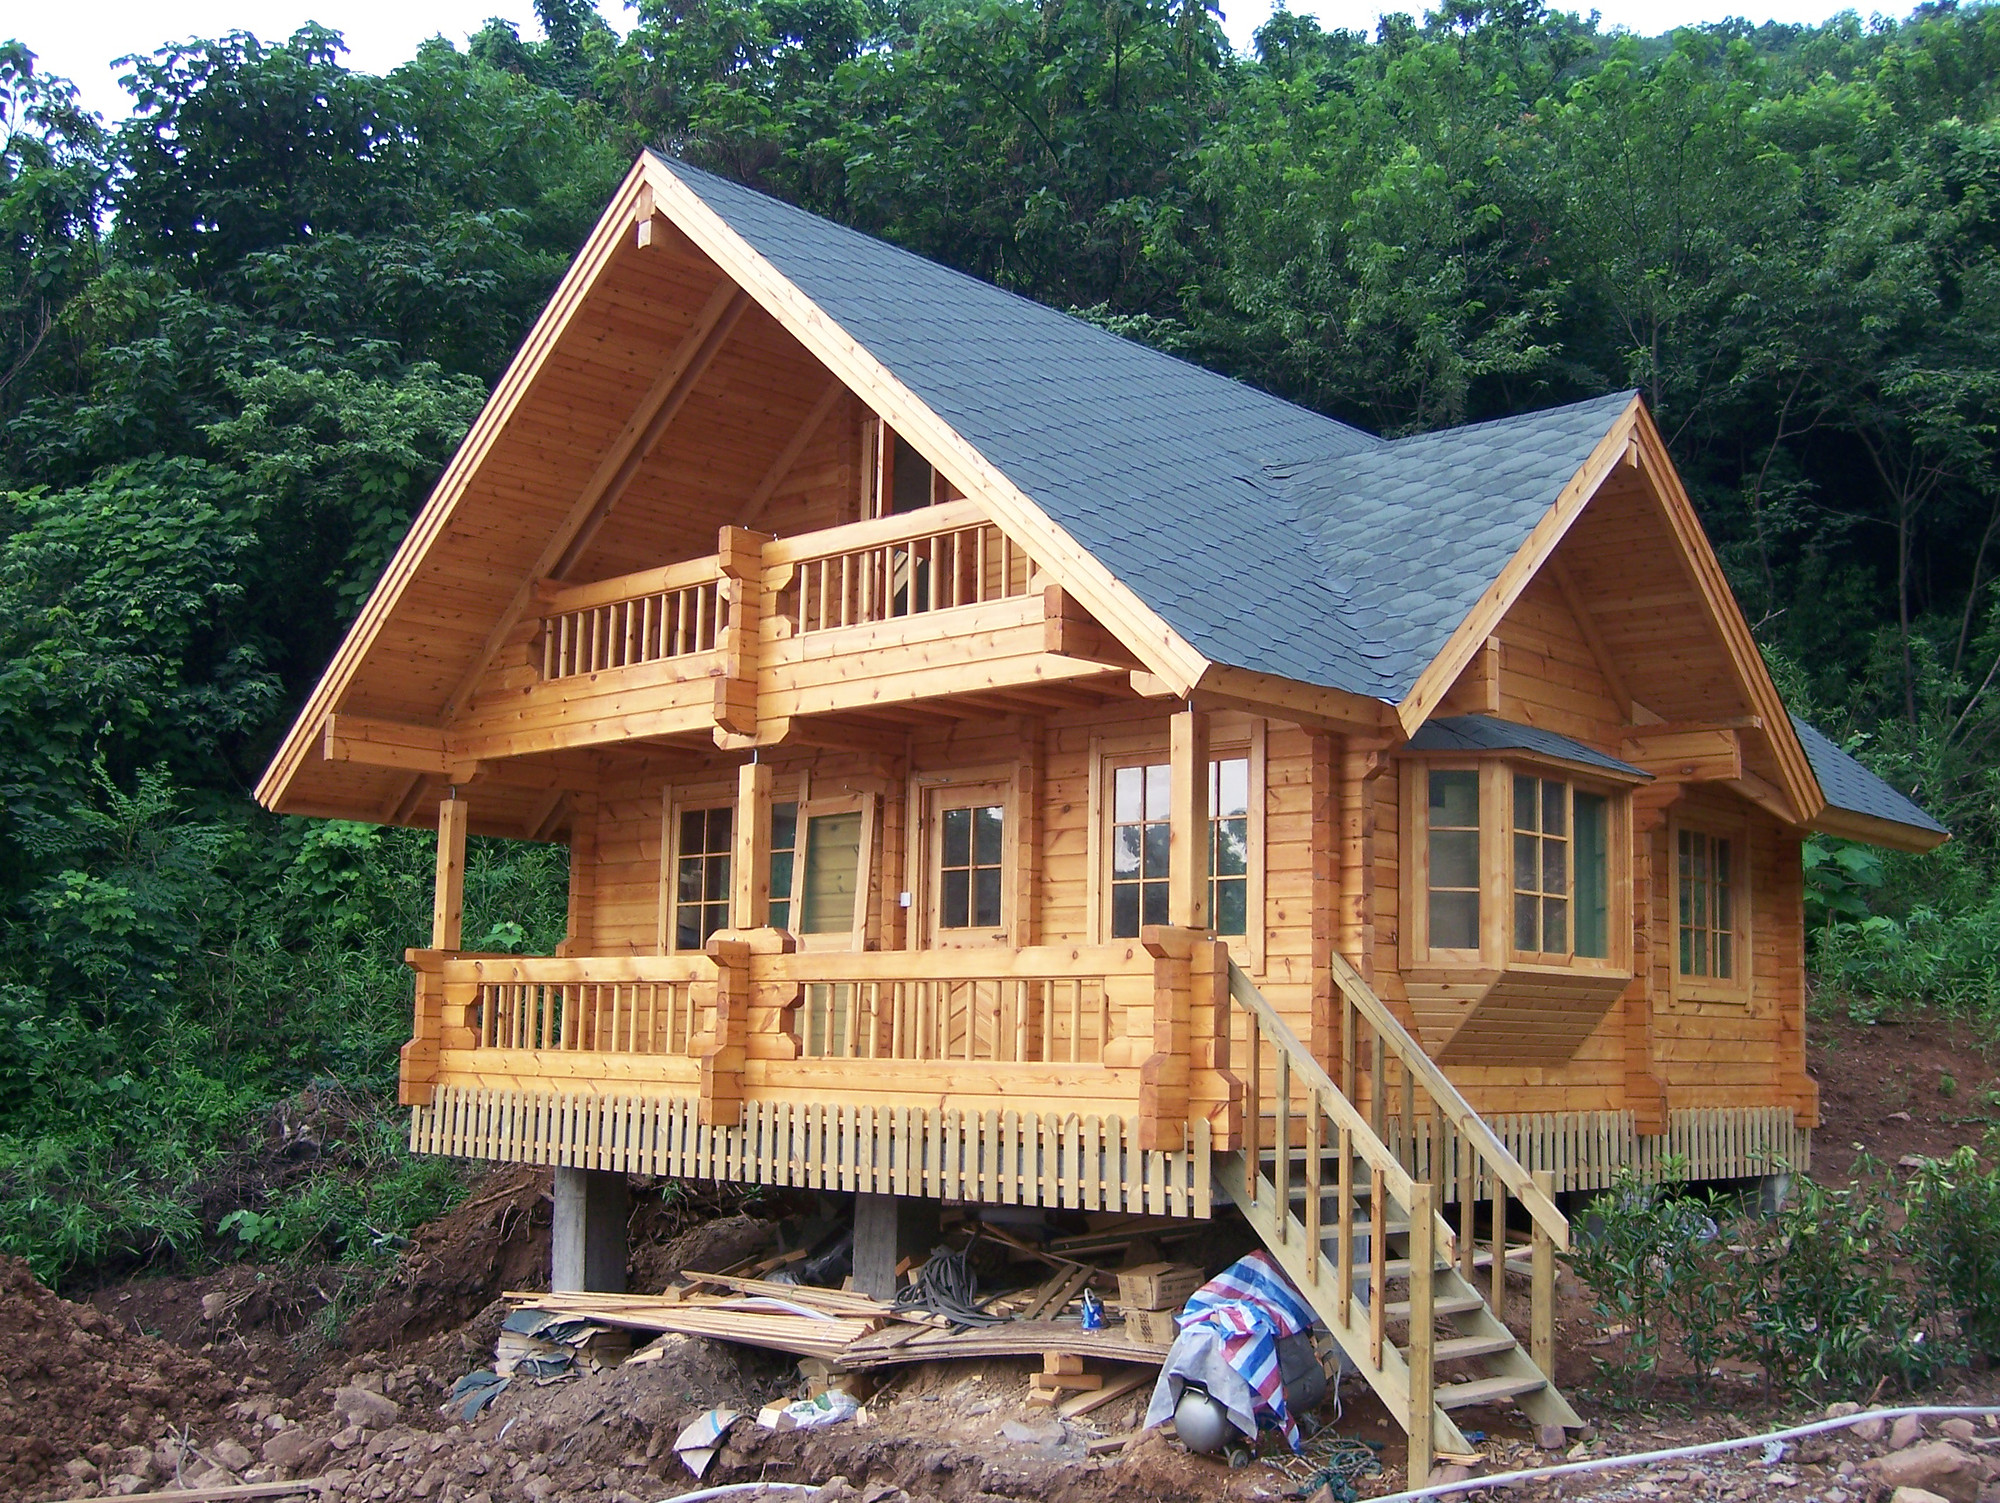 为什么美国的房子大多是木屋?木屋有什么优点?